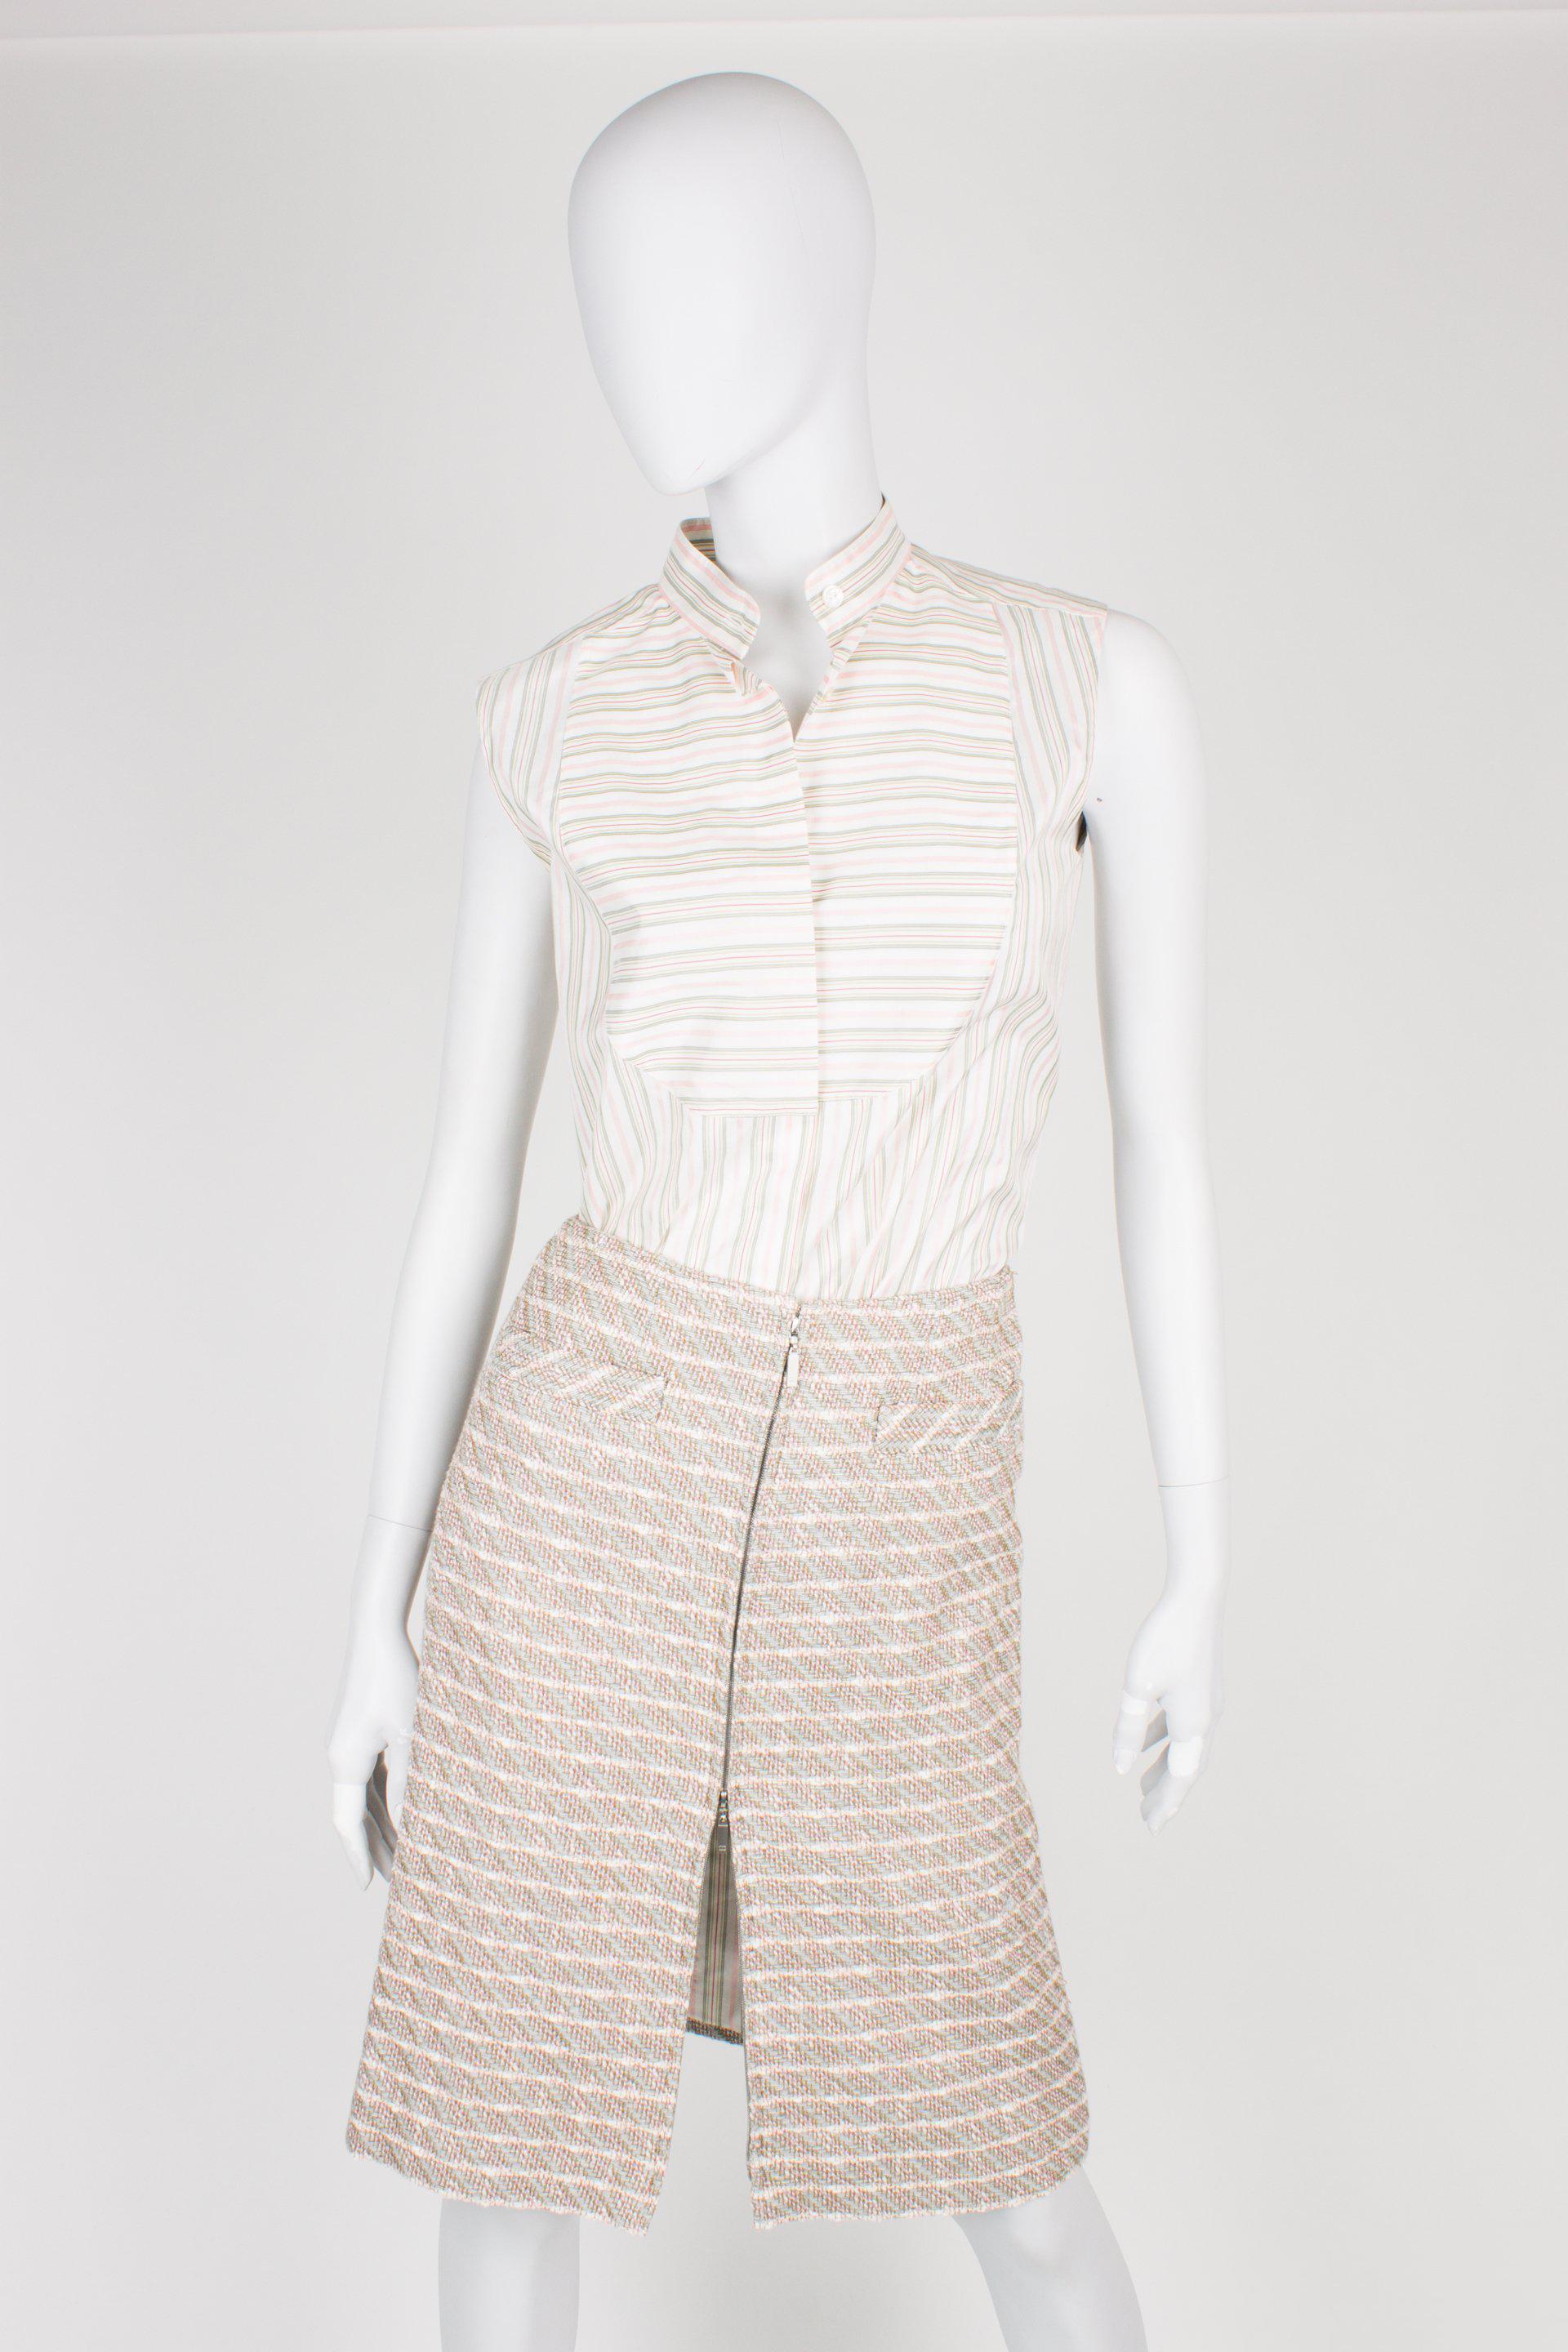 Driedelig pakje van Chanel met een jasje, rokje en blouse in een prachtige kleurencombinatie van groen, grijs, roze en off-white.

Het korte jasje heeft een ronde kraag, geen sluiting en vier opgestikte zakken aan de voorzijde. Onderaan de lange